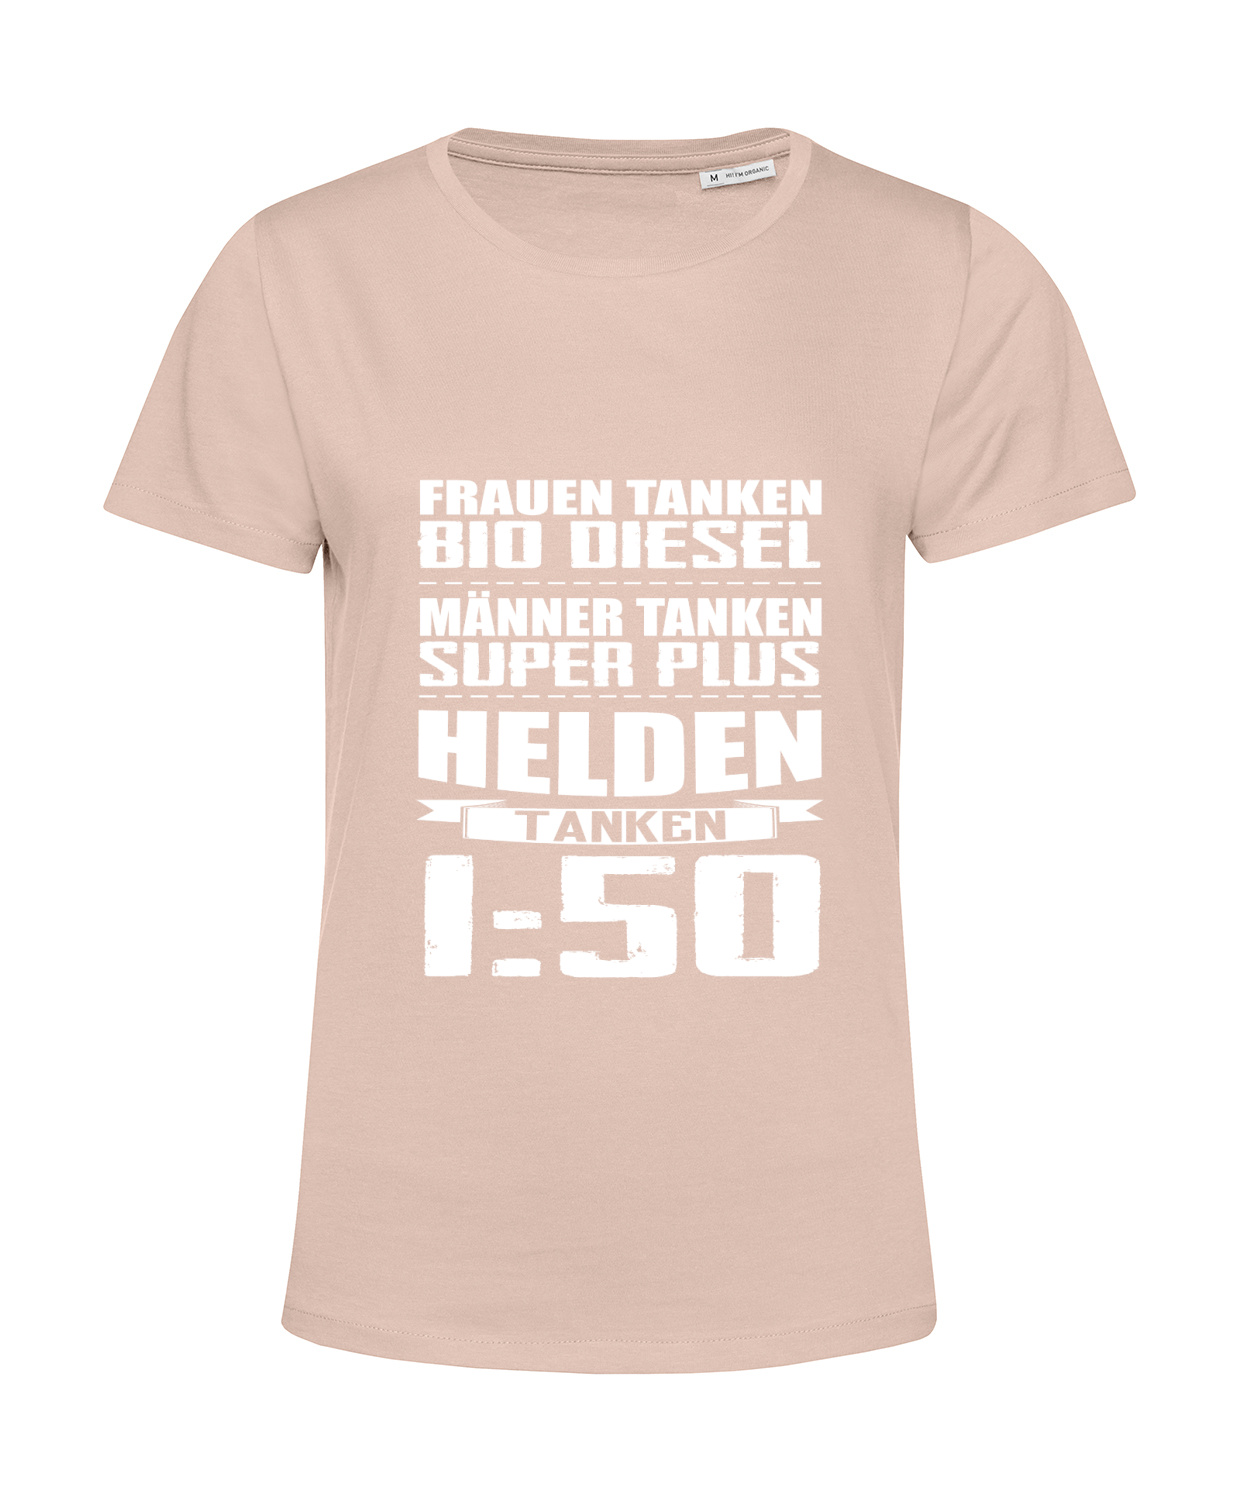 Nachhaltiges T-Shirt Damen 2Takter - Helden tanken 1 zu 50